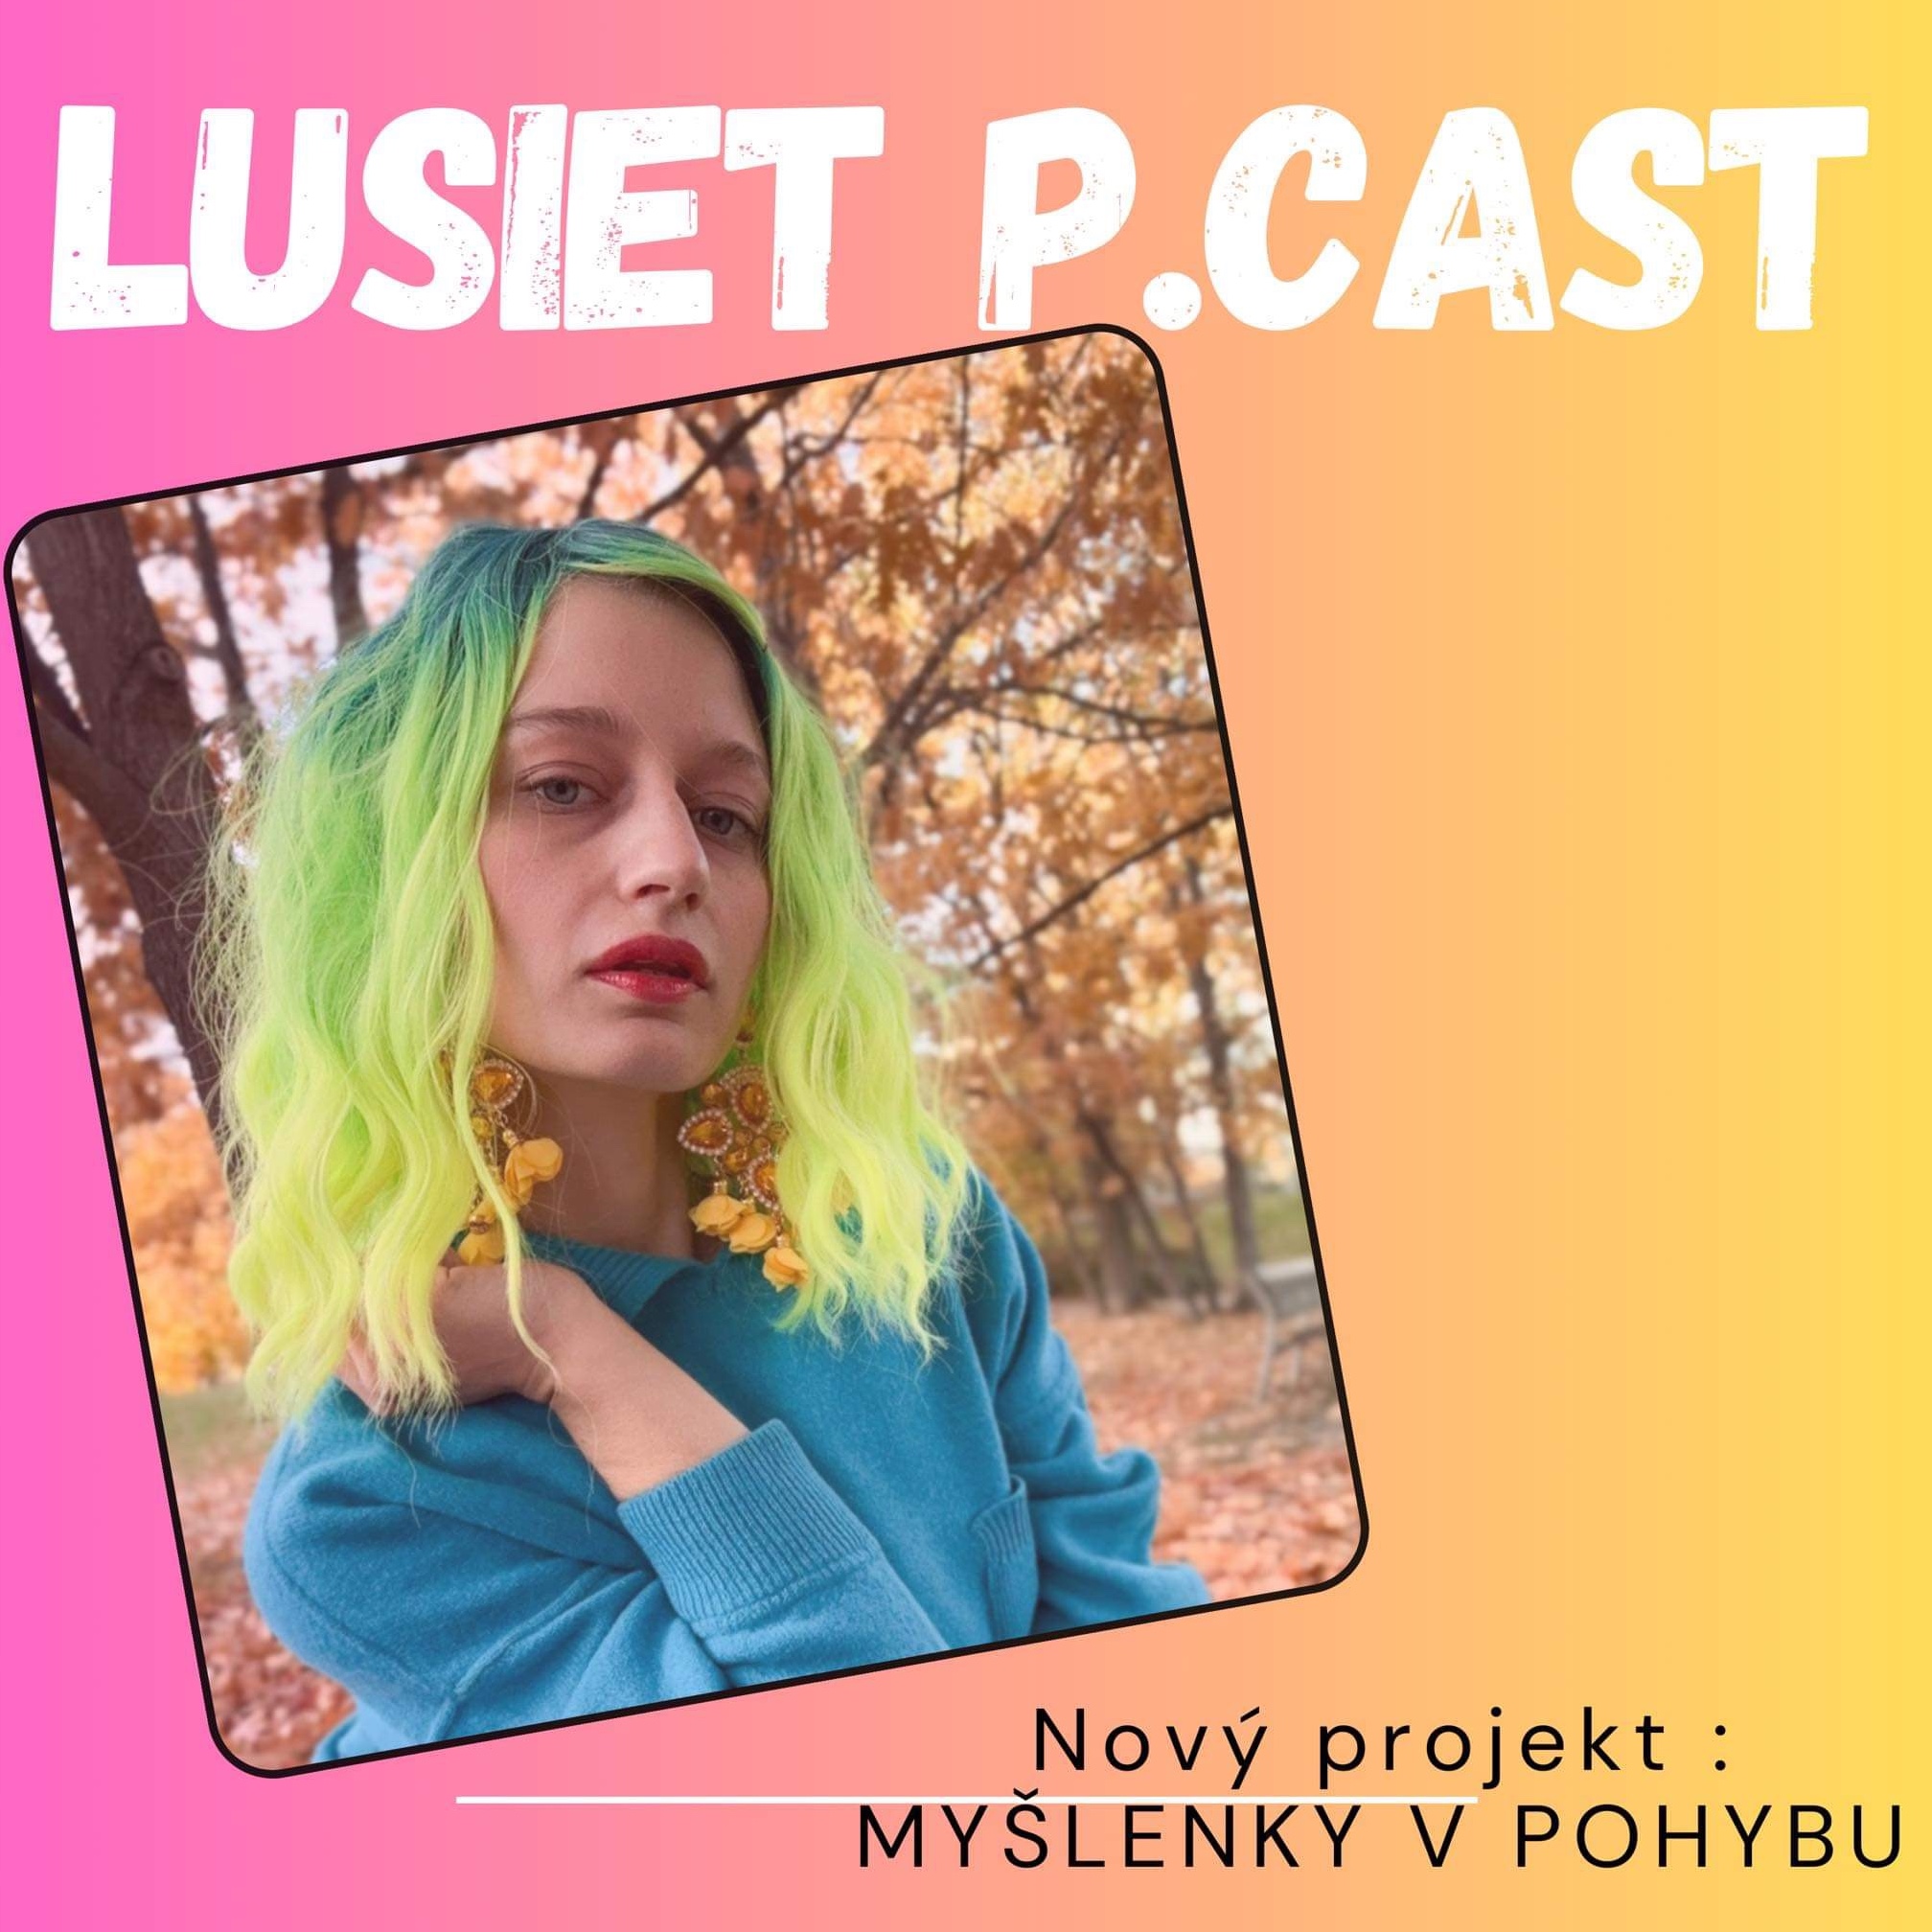 Lusiet P•cast